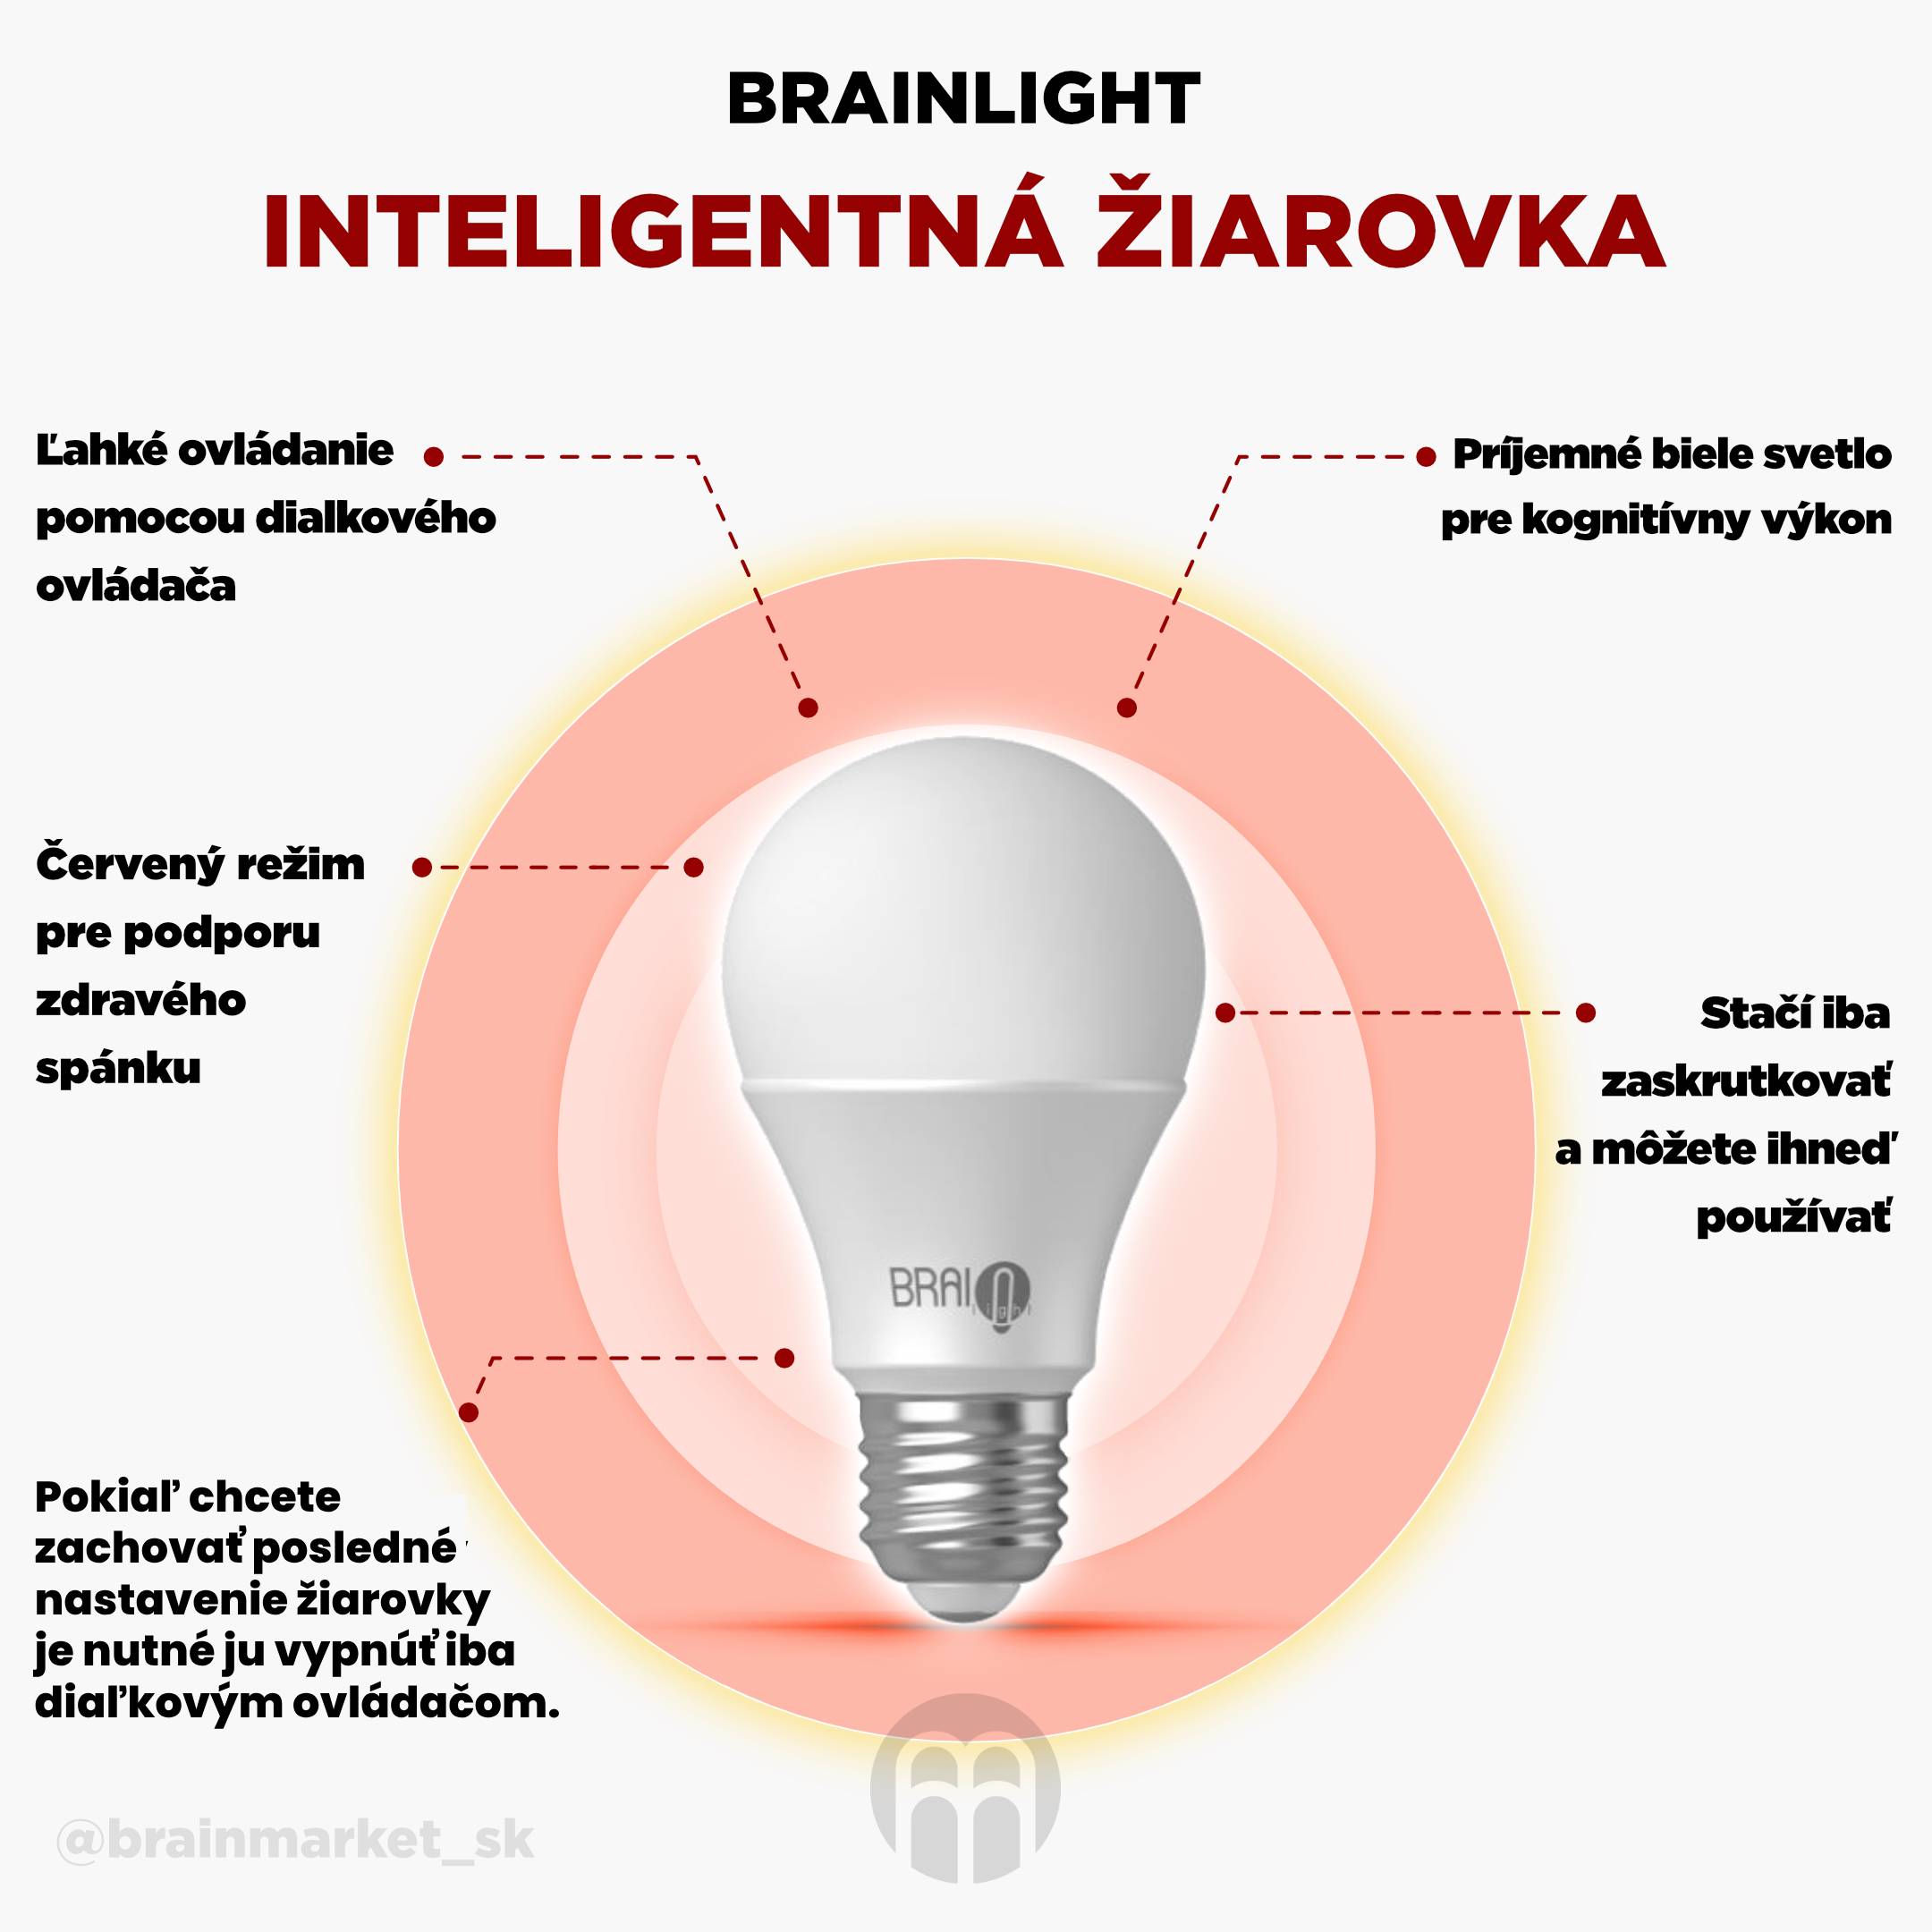 BrainLIGHT múdra žiarovka_infografika_2_cz